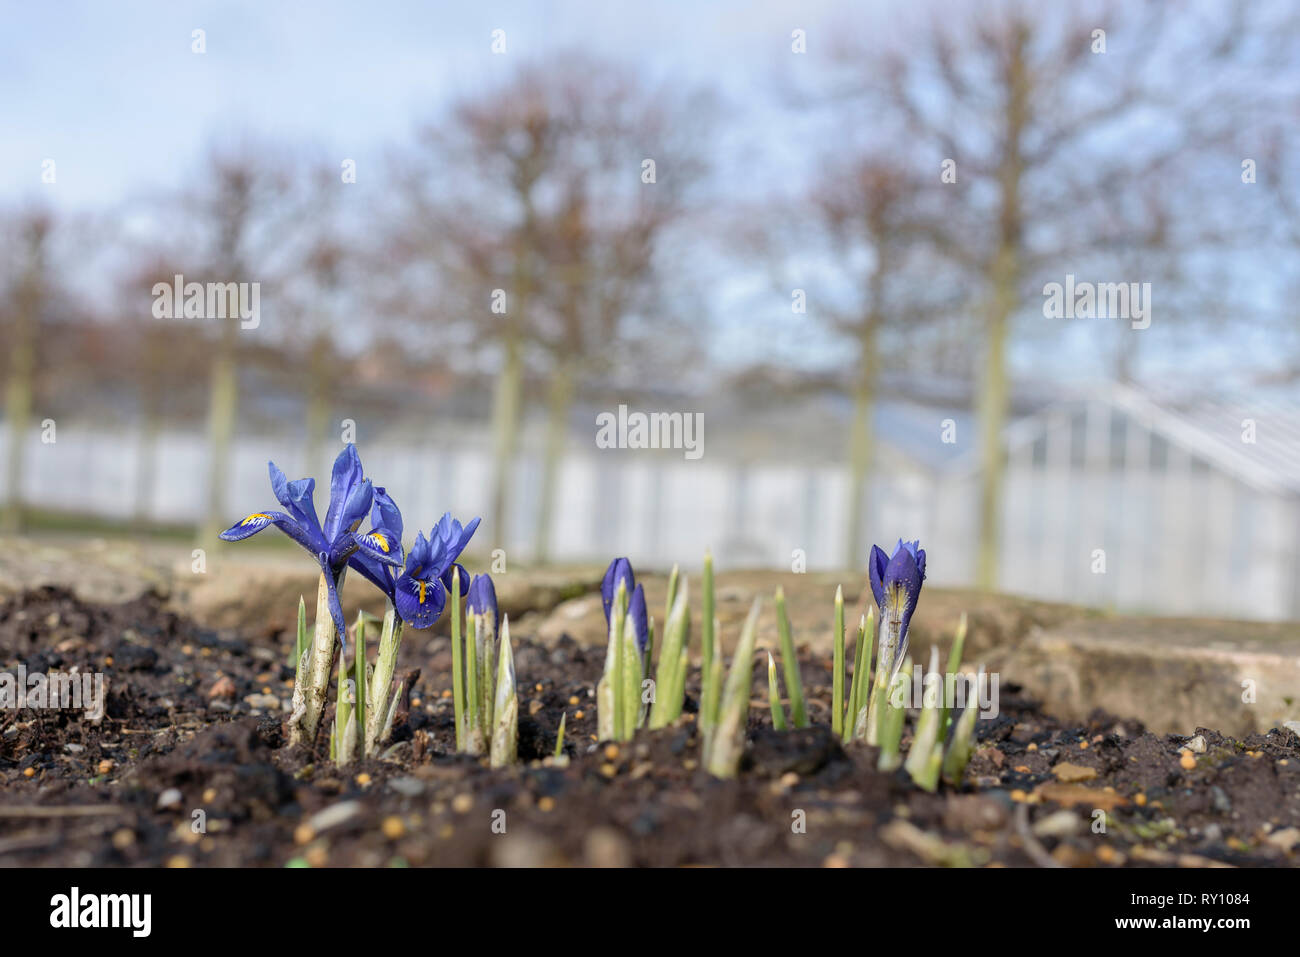 Inverno iris, Orchis Iris, Harput iris, giardino botanico, Bosestrasse, Kassel, Germania, (Iris histrioides) Foto Stock